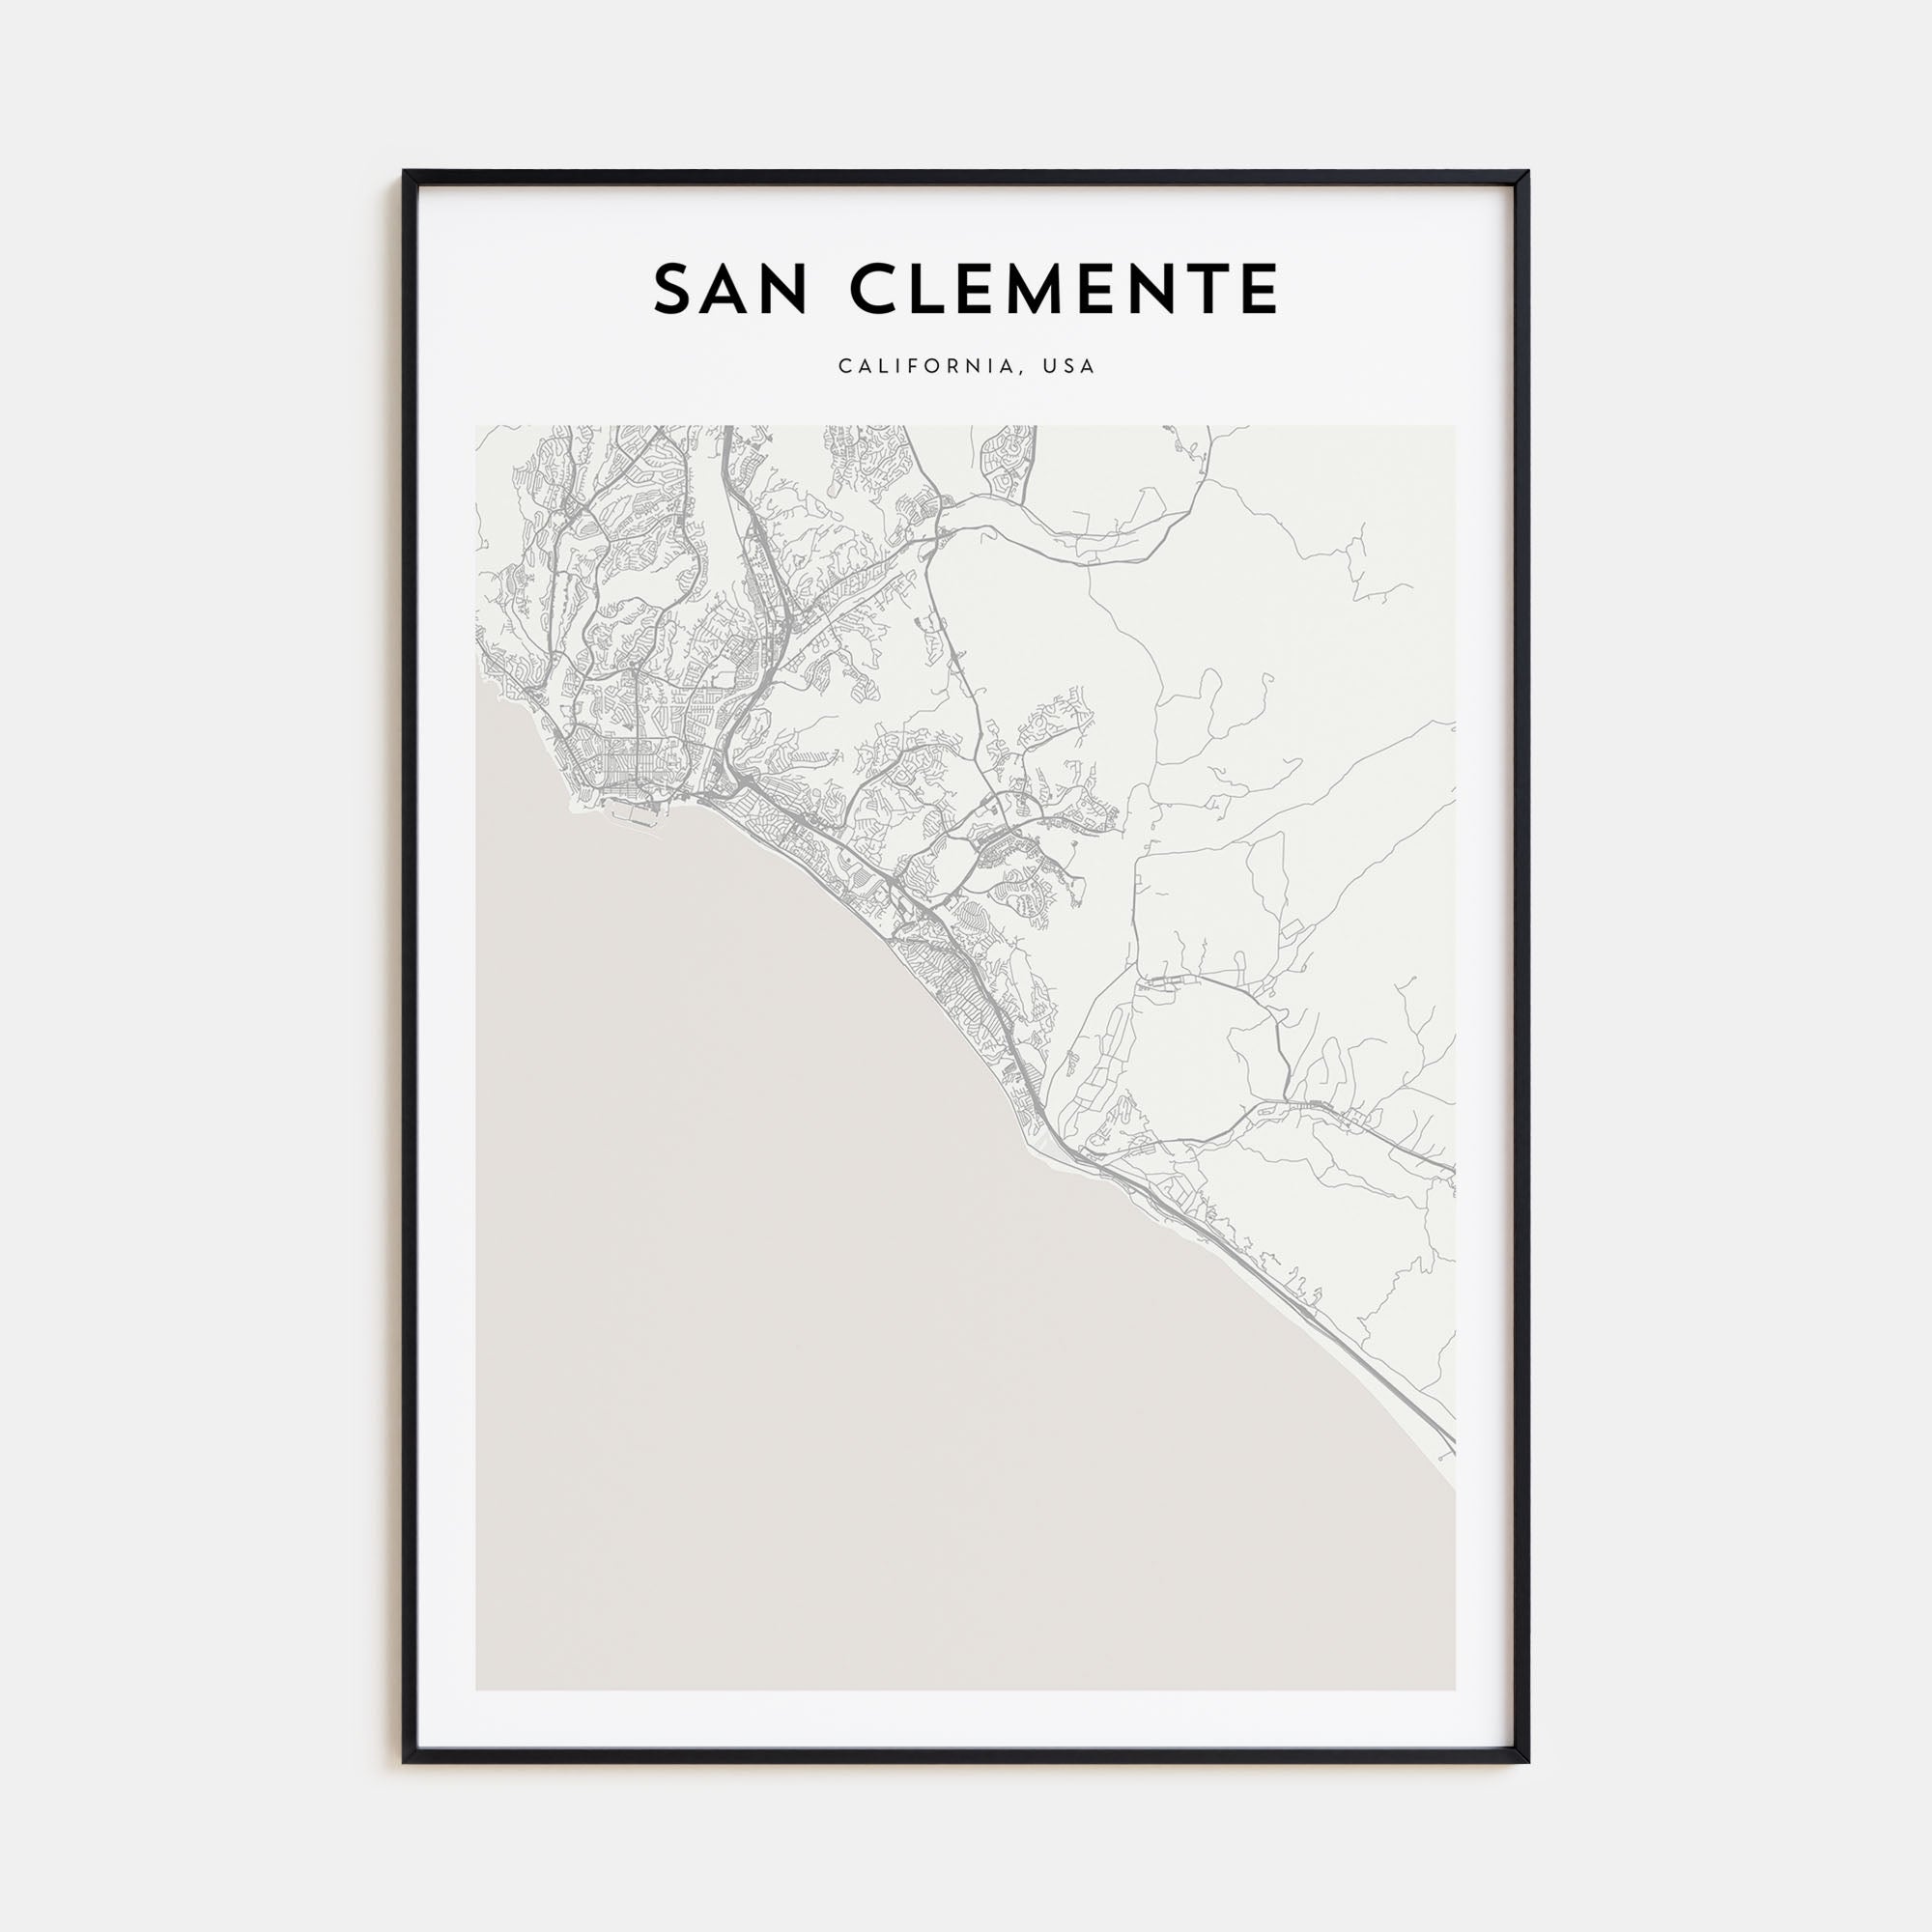 San Clemente Map Portrait Poster